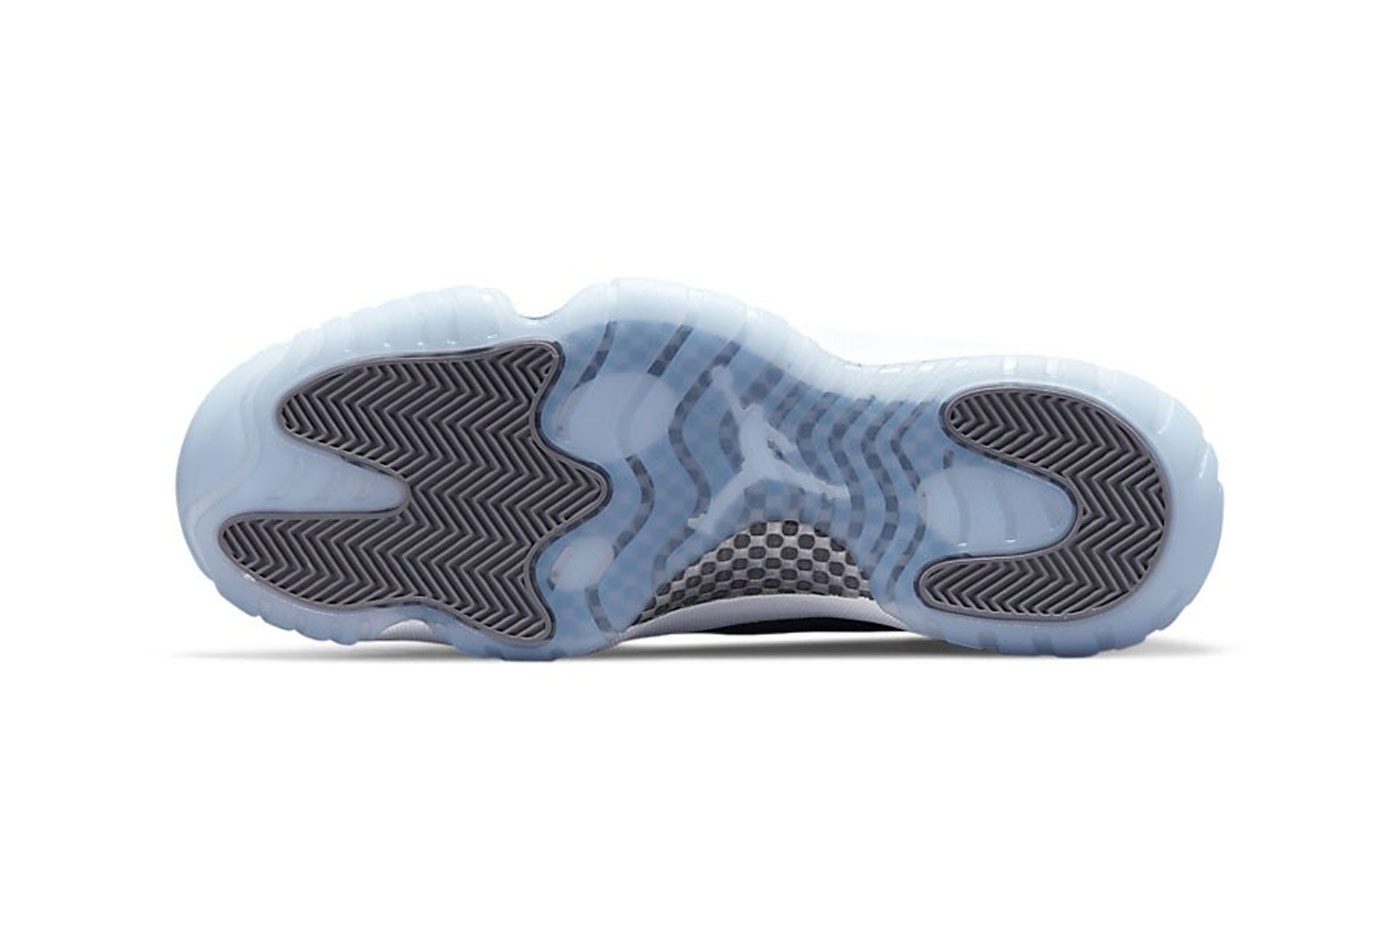 誕生20周年を迎えるエアジョーダン 11 “クールグレー”が復刻 Official Look at the Air Jordan 11 “Cool Grey” Footwear 